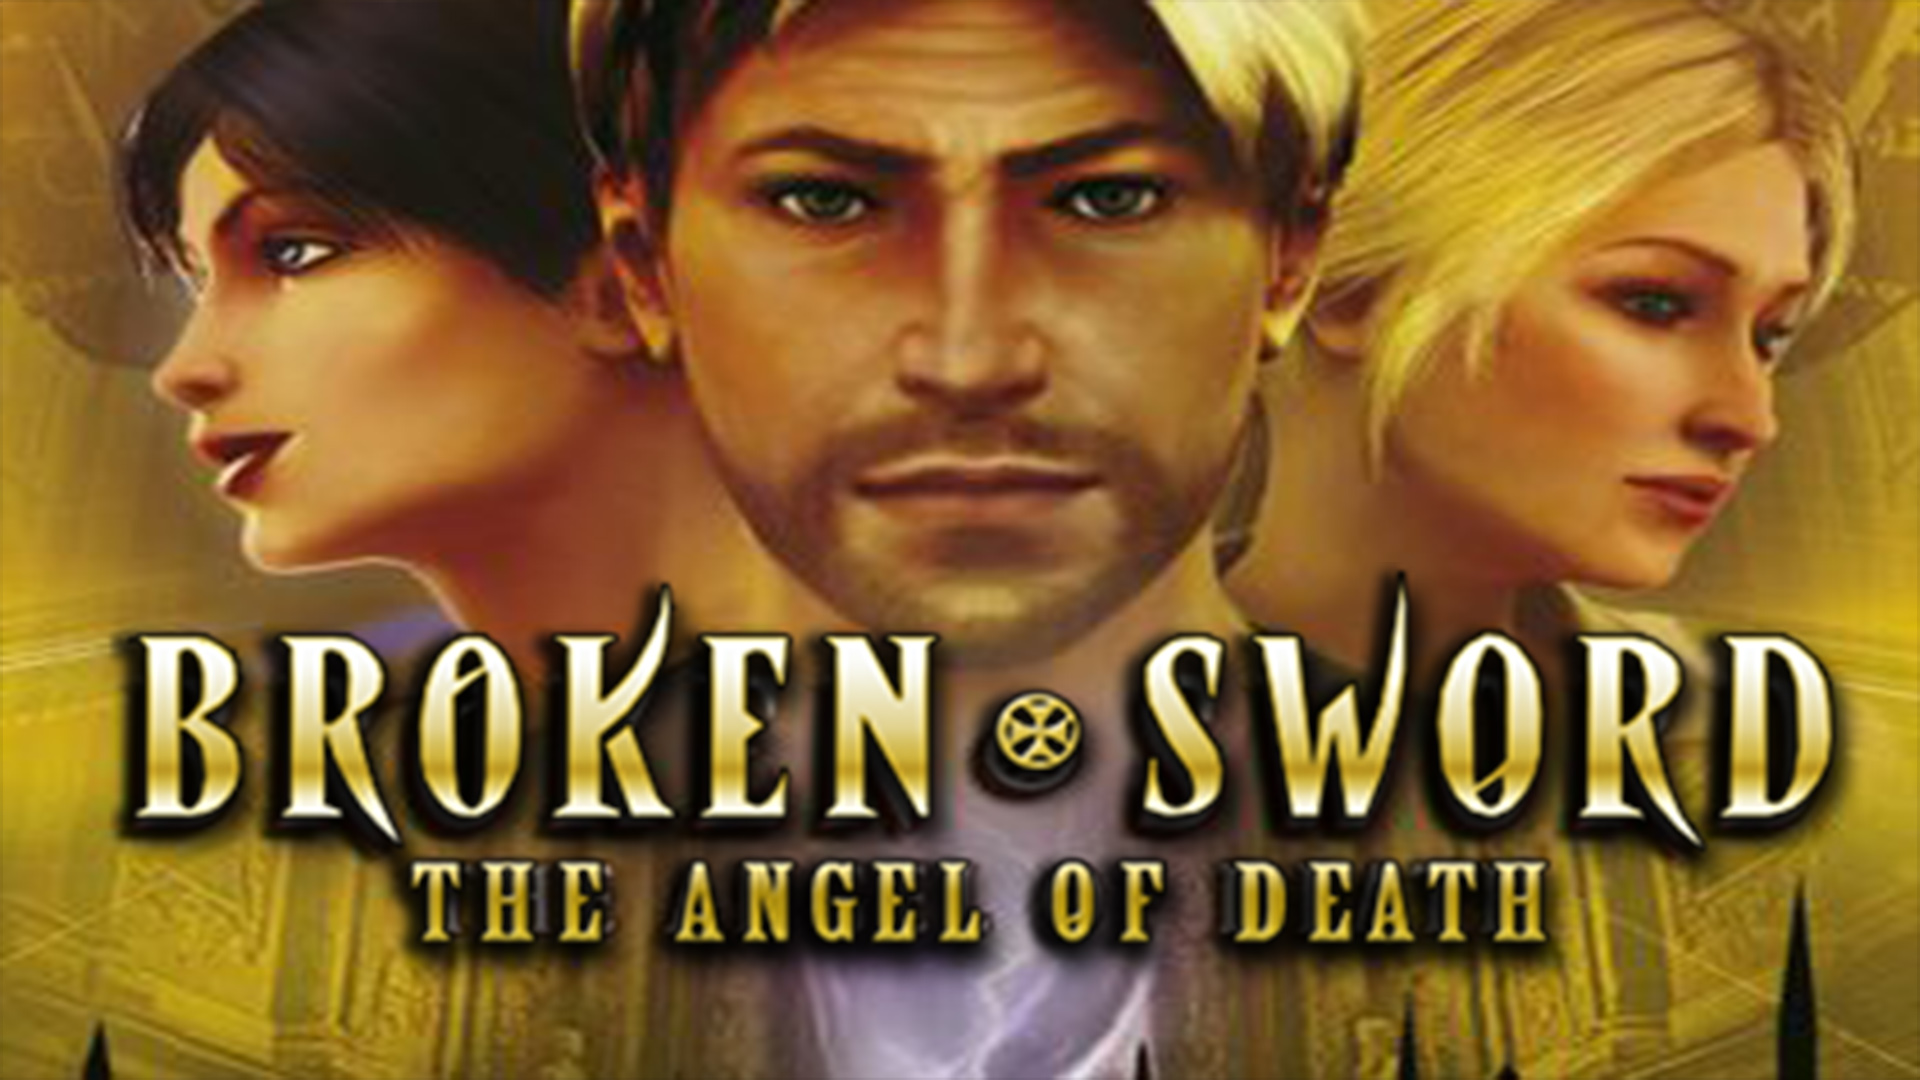 Broken Sword: The Angel of Death Picture